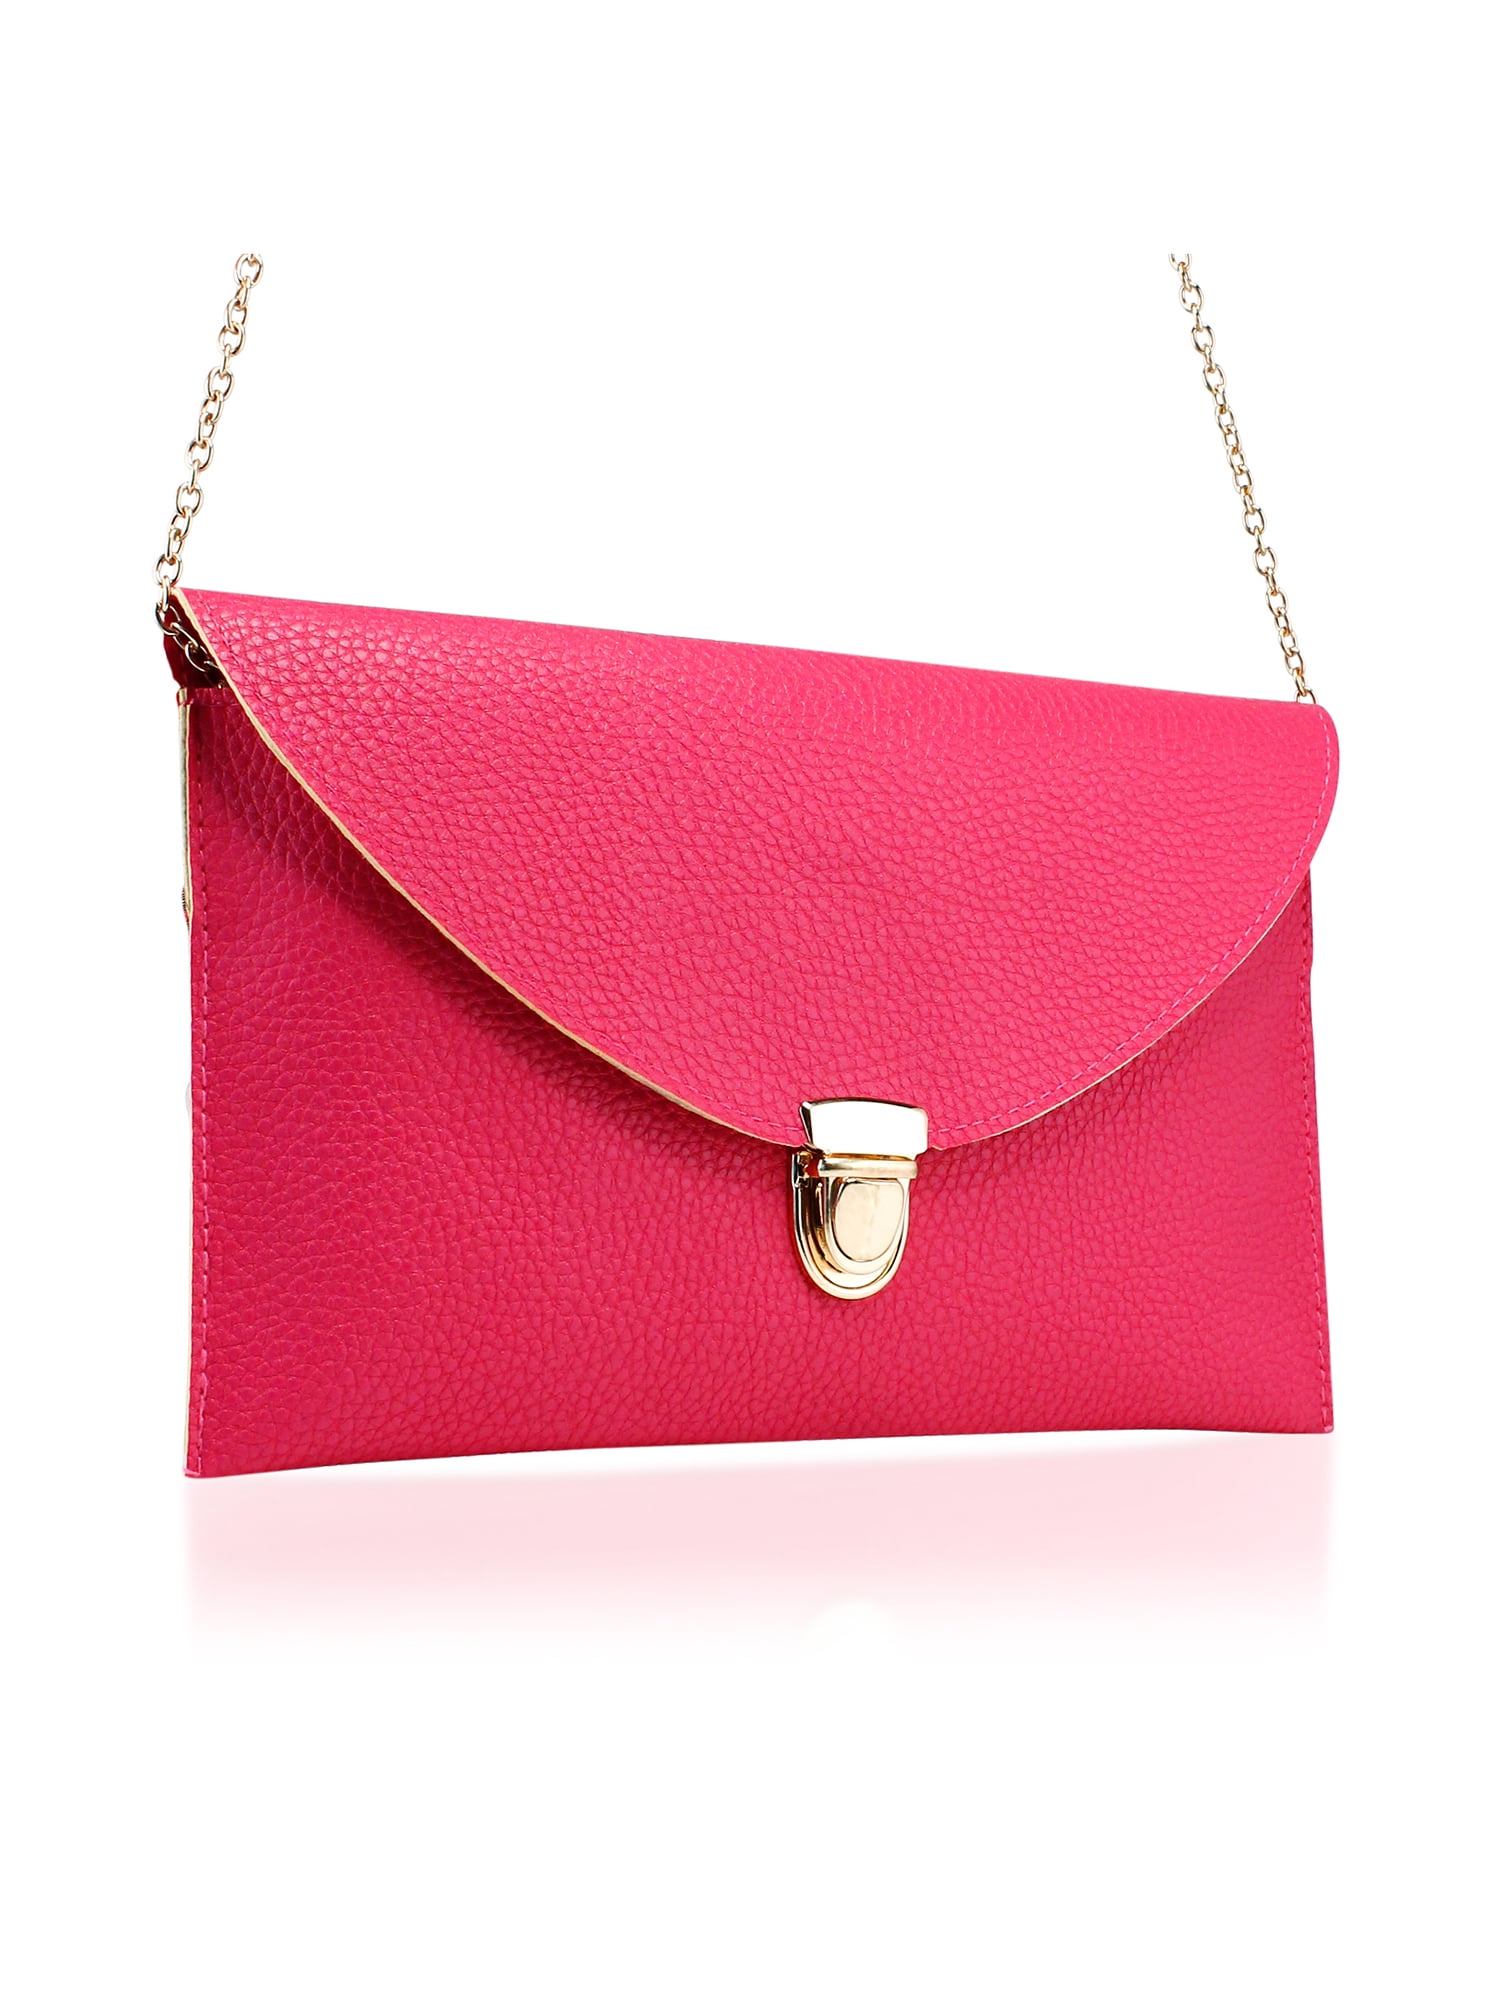 Women Girl Envelope Clutch Bag Solid Color  Purse Party Shoulder  Handbag 